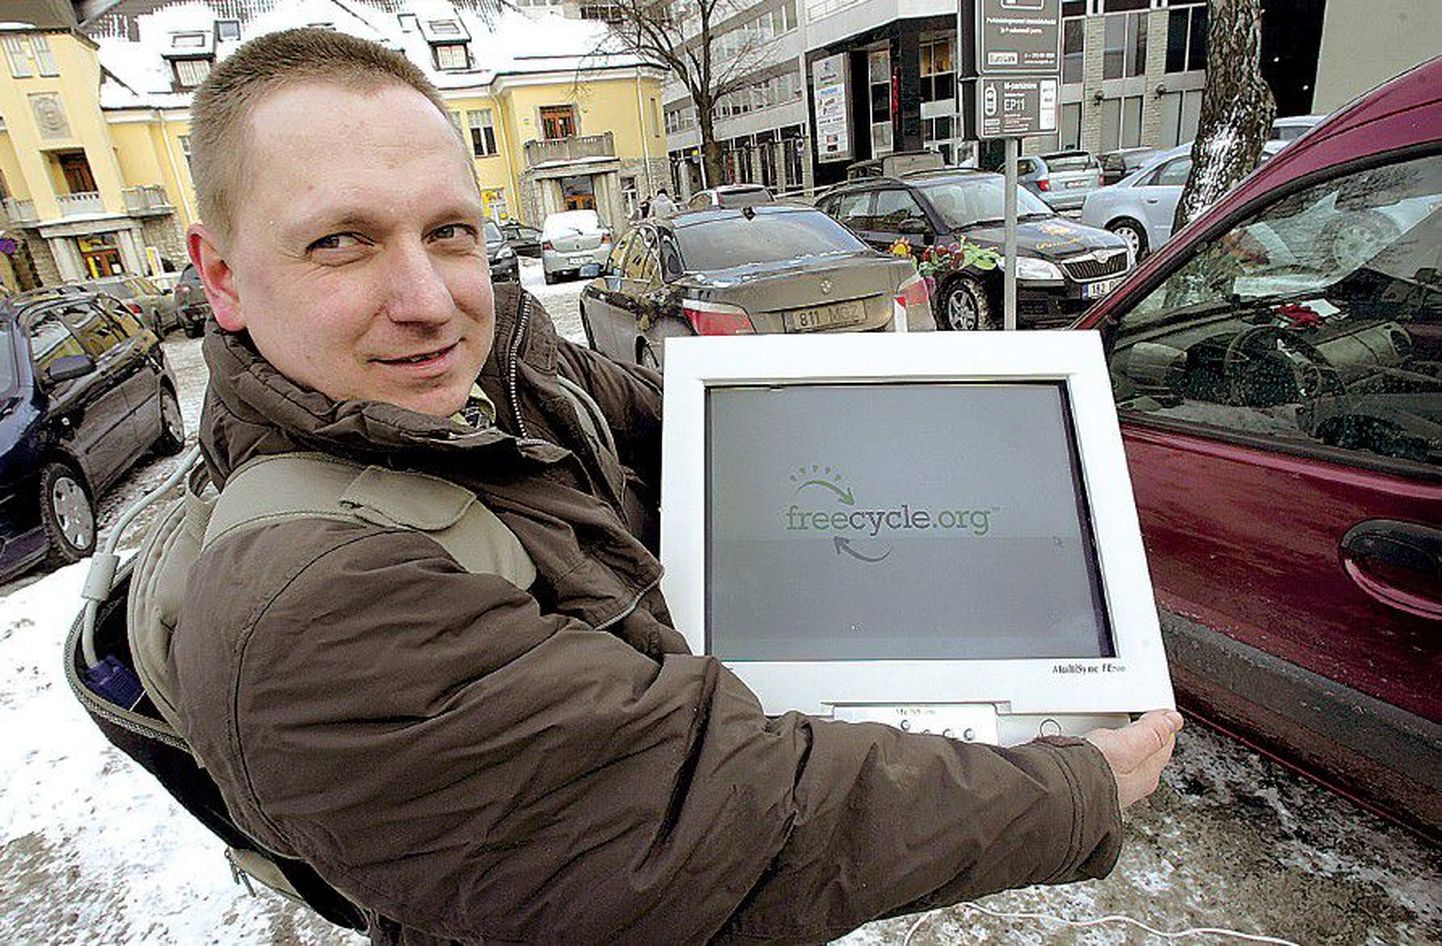 Администратор таллиннской группы freecycle Йозеп-Георг Ярвемаа рассказал, что через группу нашли новых хозяев четыре компьютерных монитора.